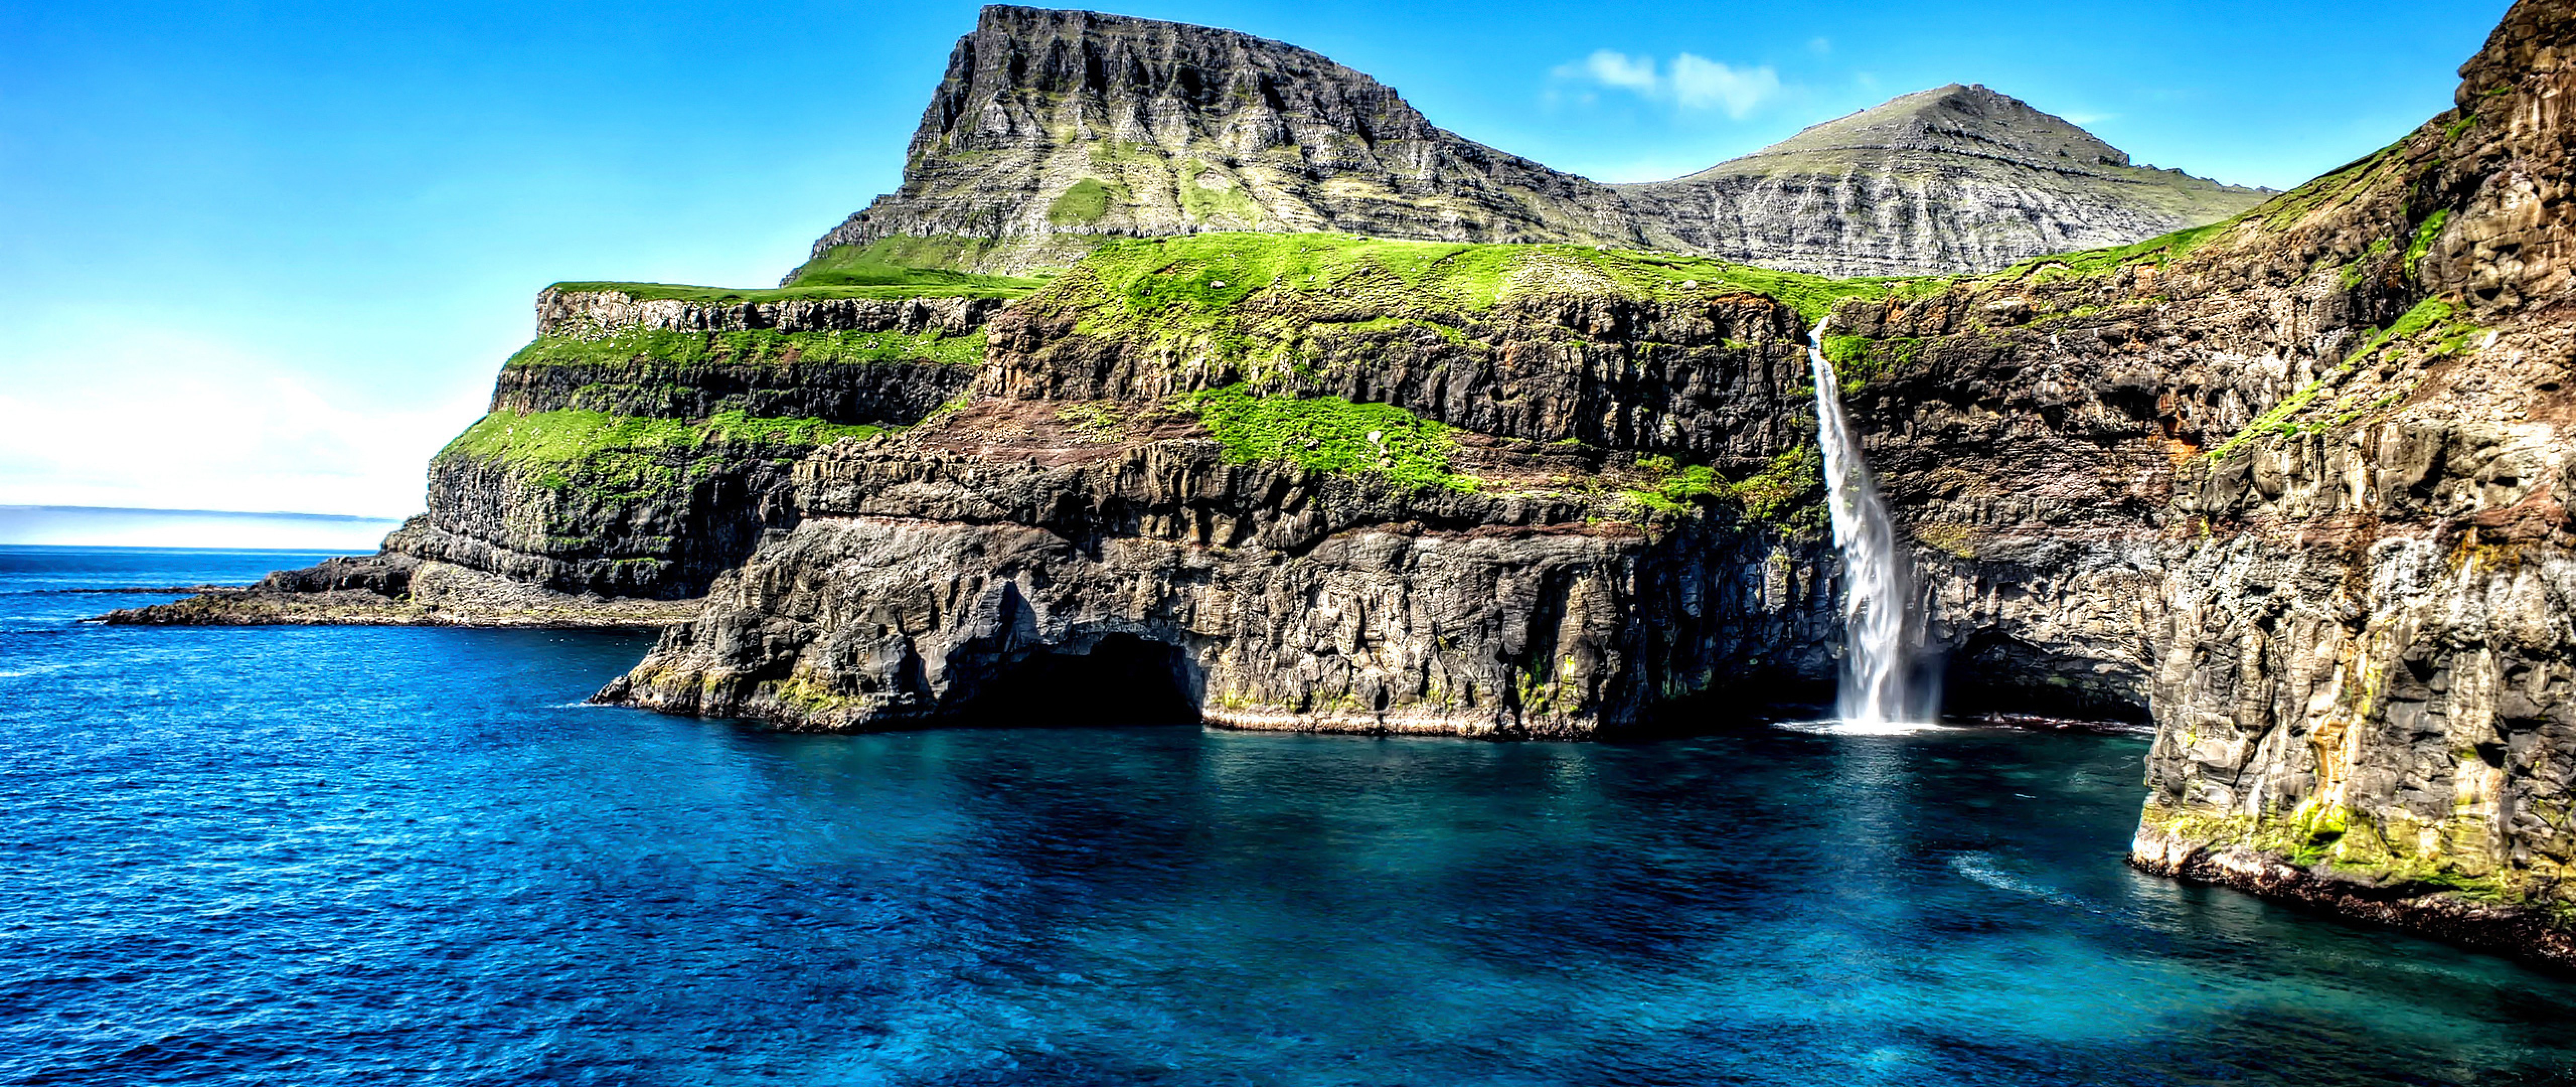 モバイル用ウルトラhd壁紙 水域 自然の風景 自然 崖 海 Wallpaperuse